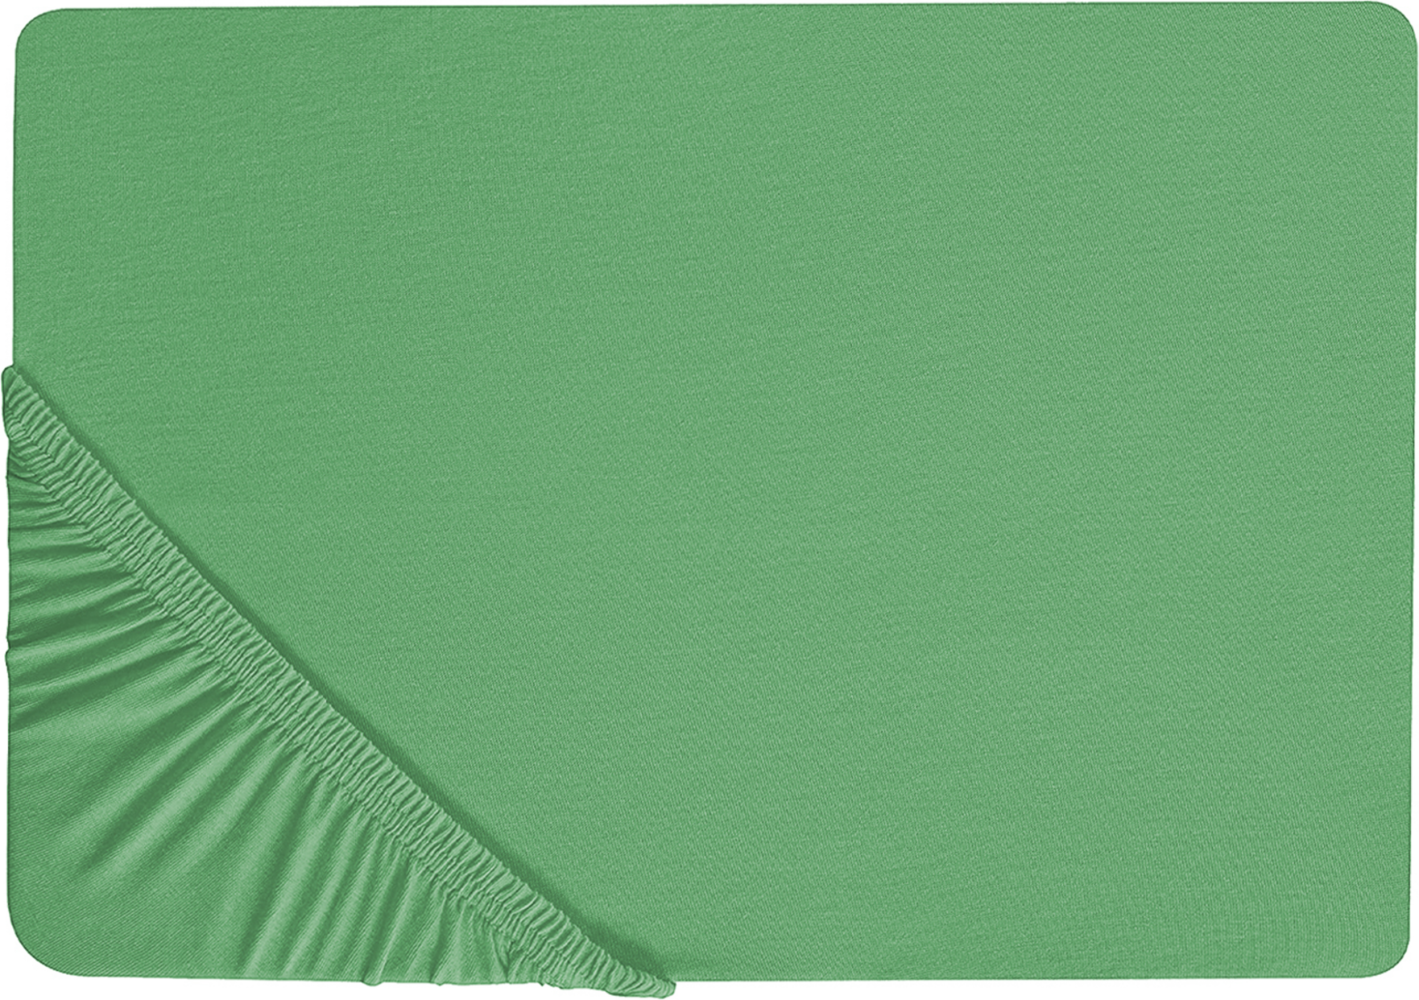 Spannbettlaken Baumwolle grün 200 x 200 cm JANBU Bild 1